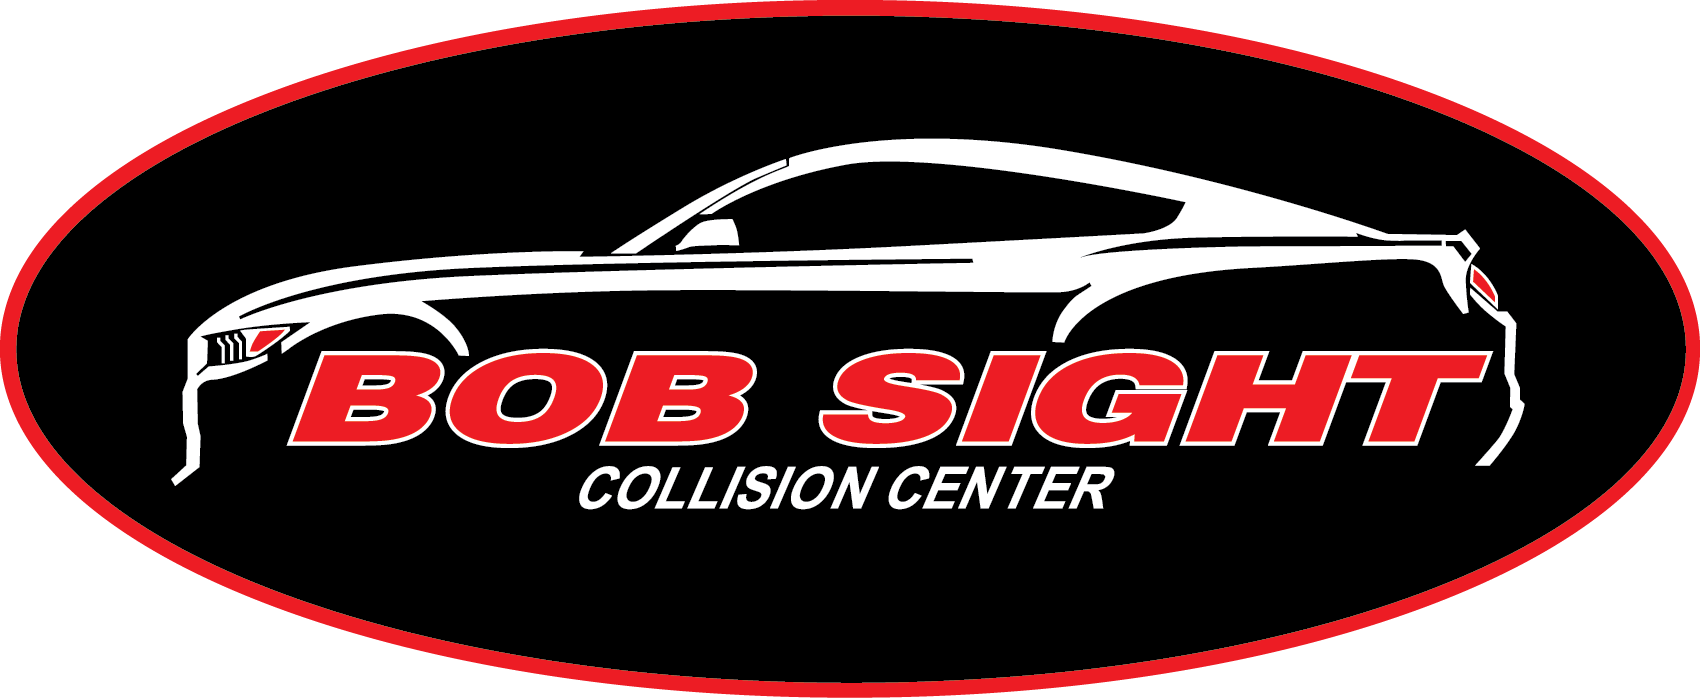 Bob Sight Collision Center Lee's Summit, Missouri